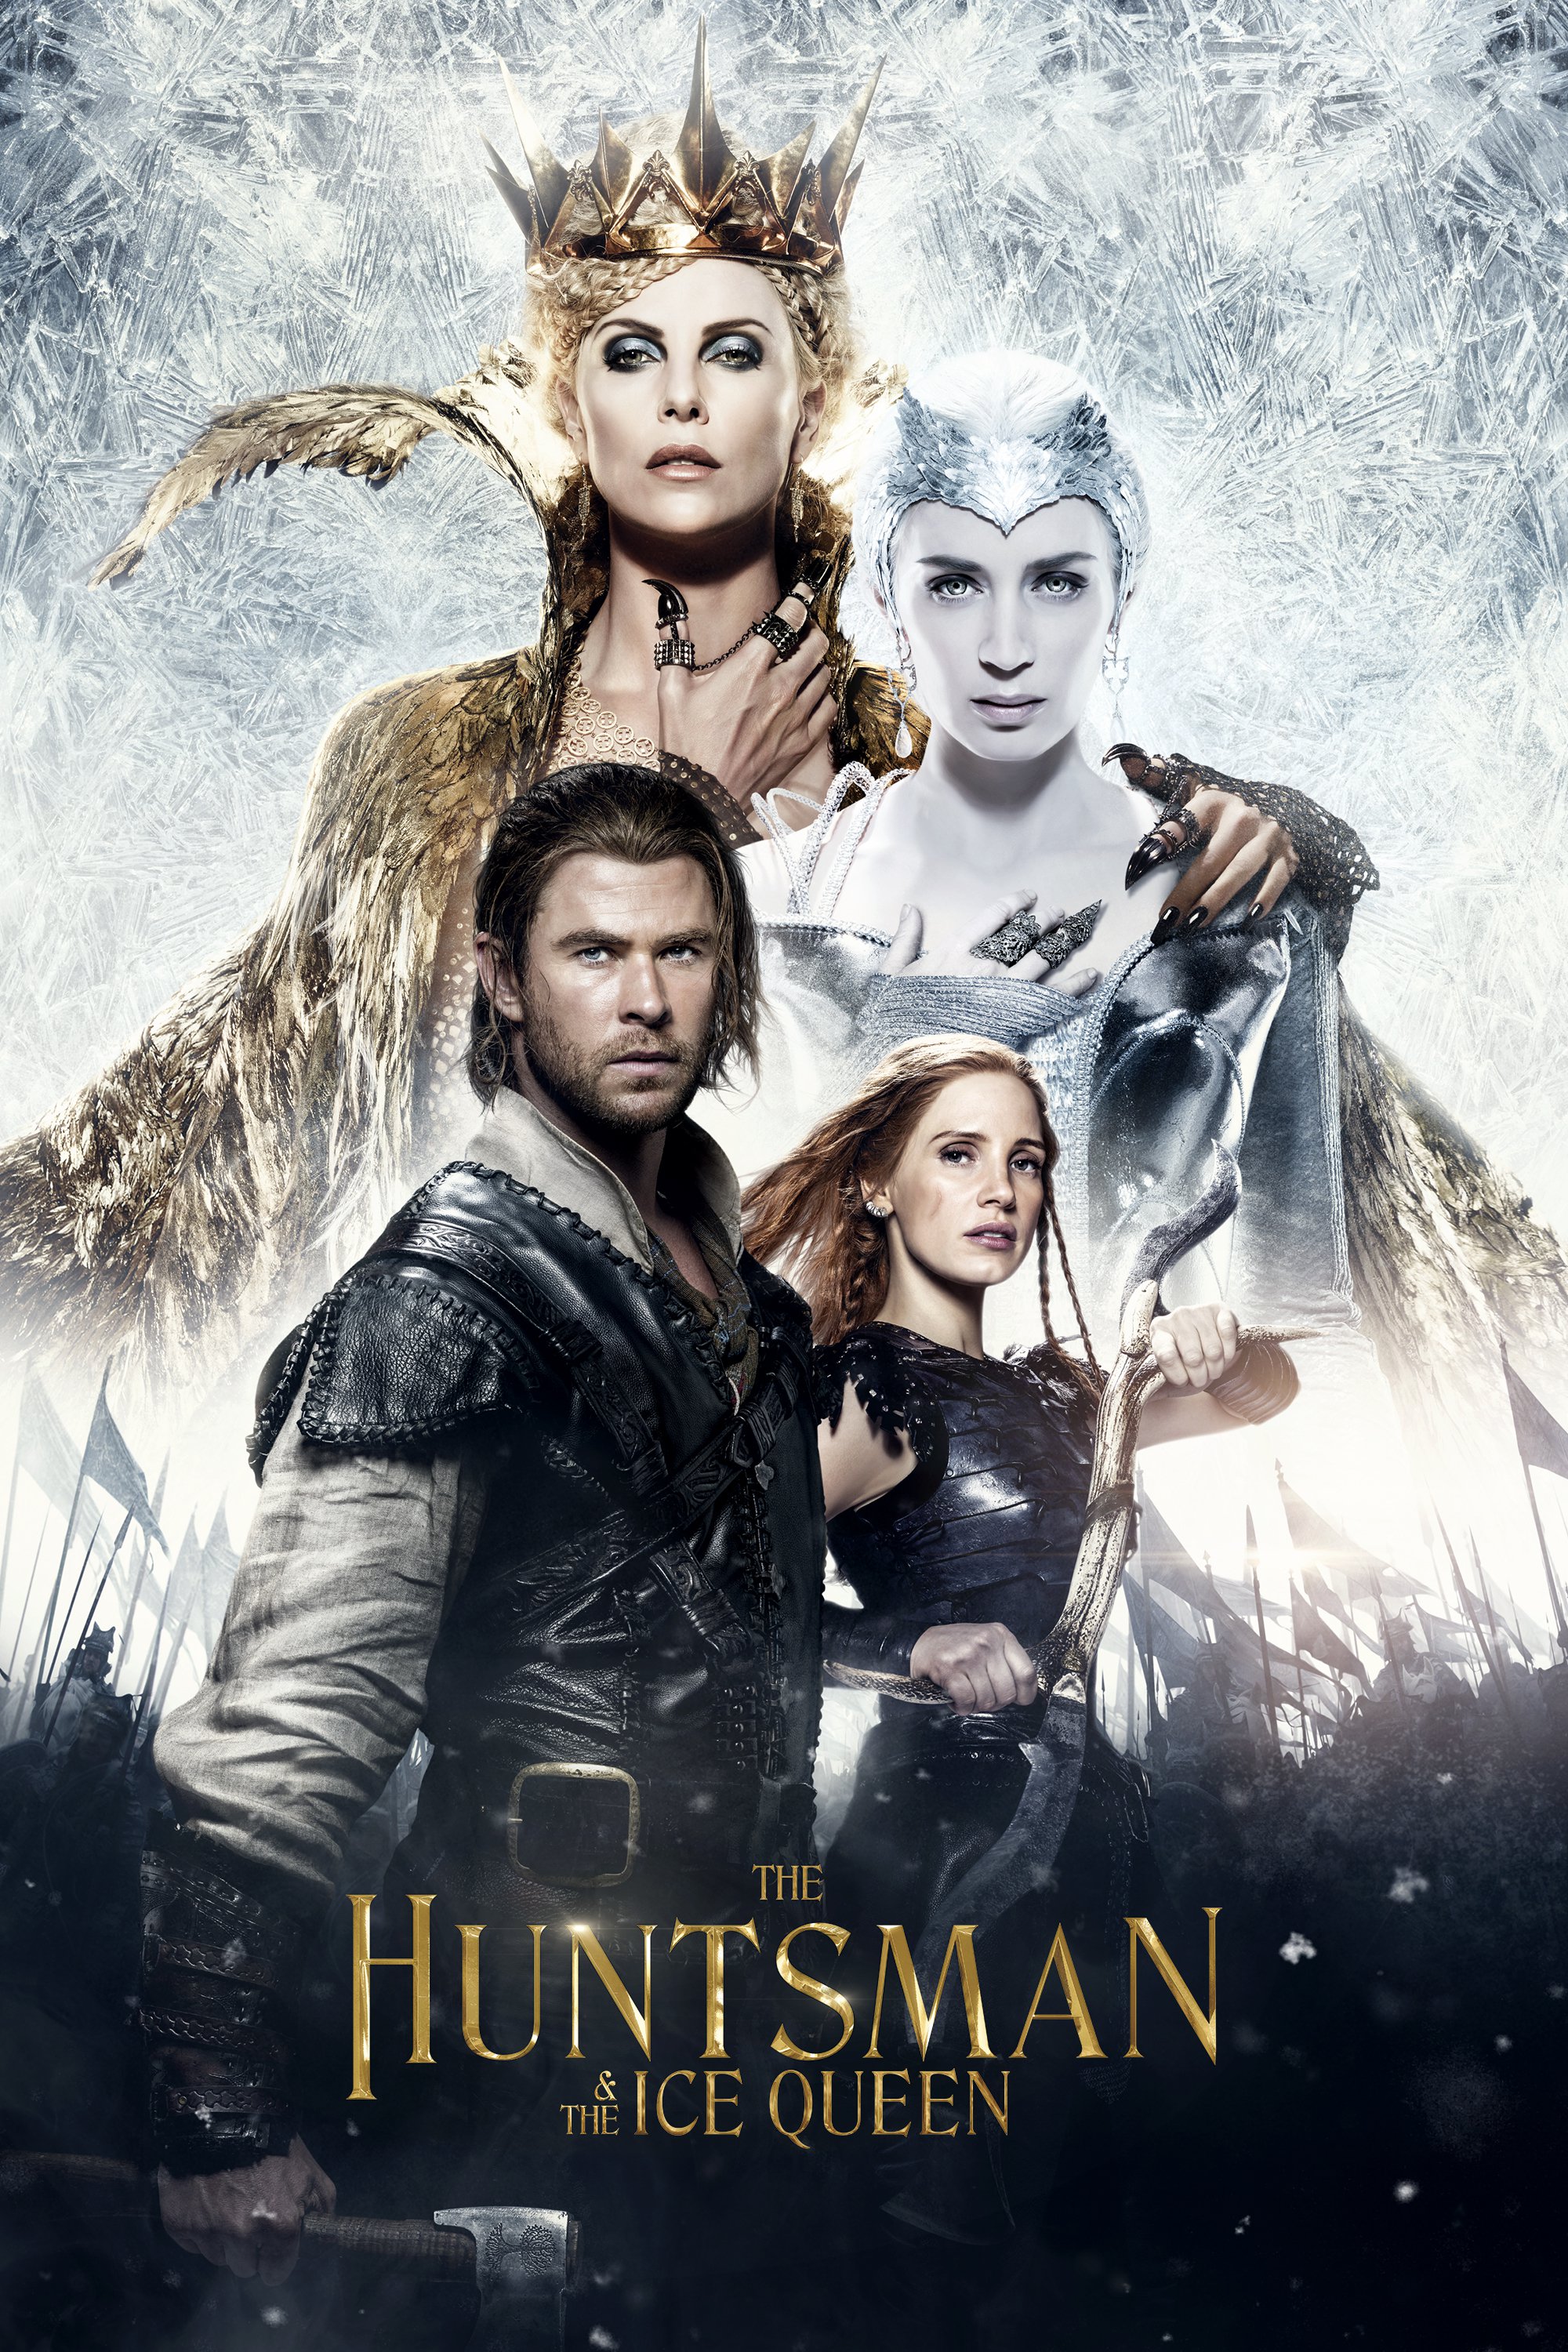 Plakat von "The Huntsman & the Ice Queen"